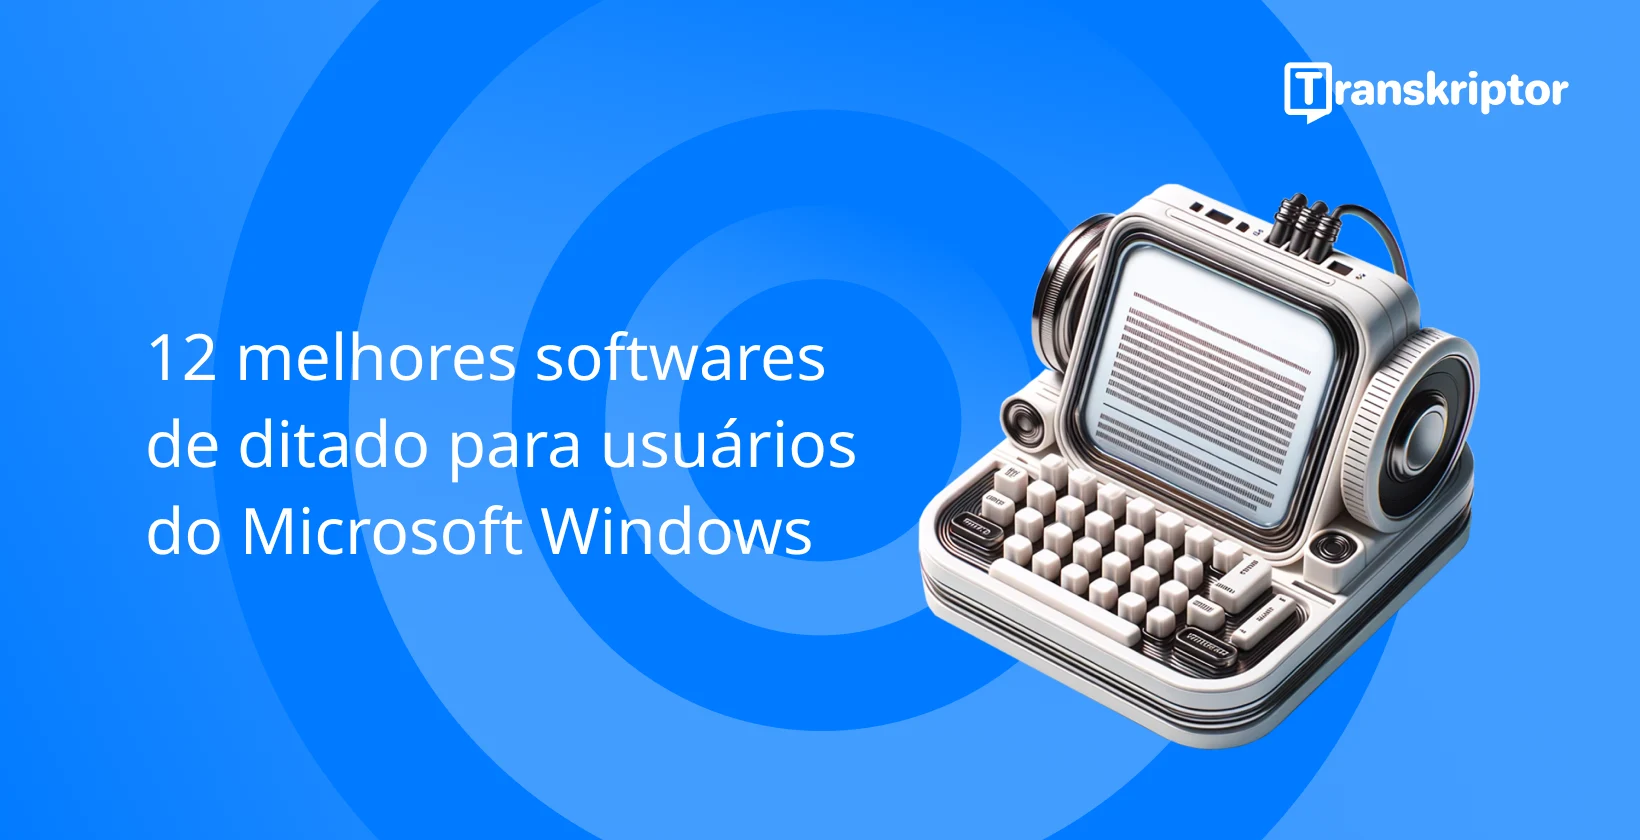 Software de ditado para usuários Windows com microfone vintage e máquina de escrever, simbolizando digitação por voz.